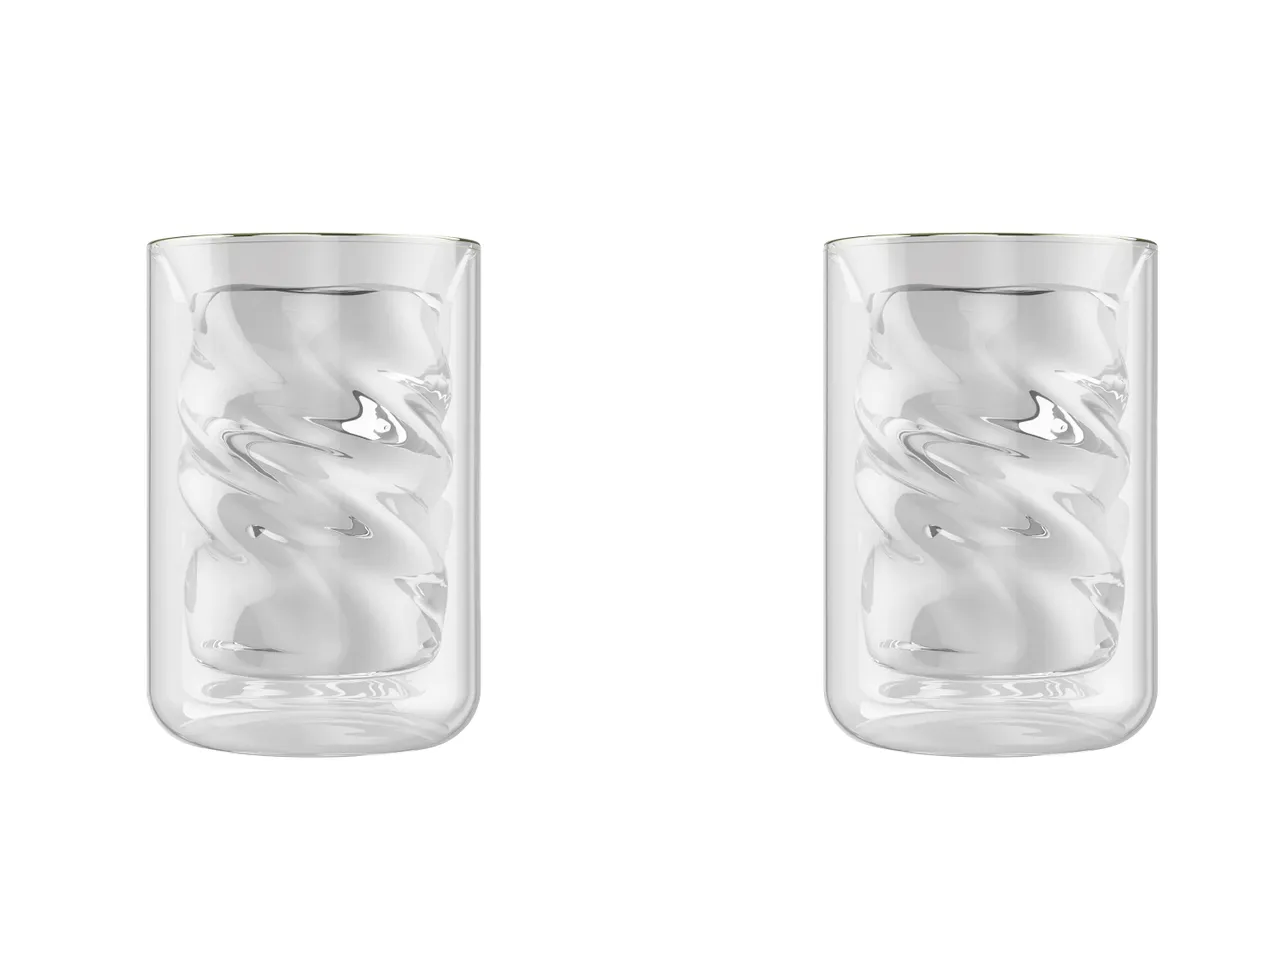 Bicchieri a doppia parete , prezzo 9.99 EUR 
Bicchieri a doppia parete 2 pezzi 
- ...